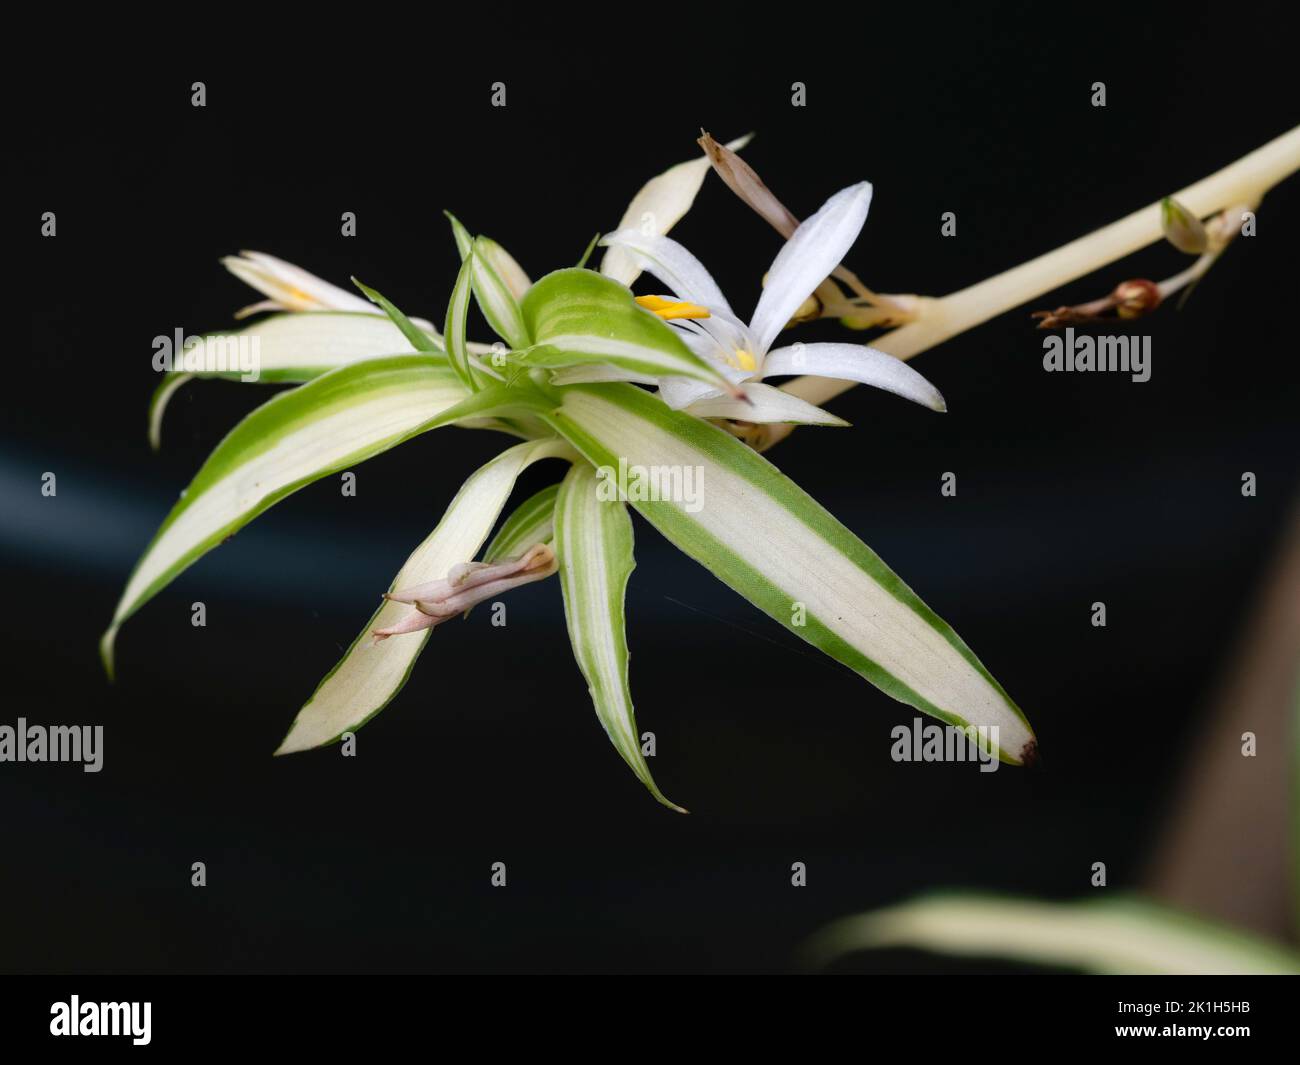 Fleur blanche et feuillage évergé variégé d'un décalage en développement de la plante d'araignée populaire Chlorophytum comosum 'Variegatum' Banque D'Images